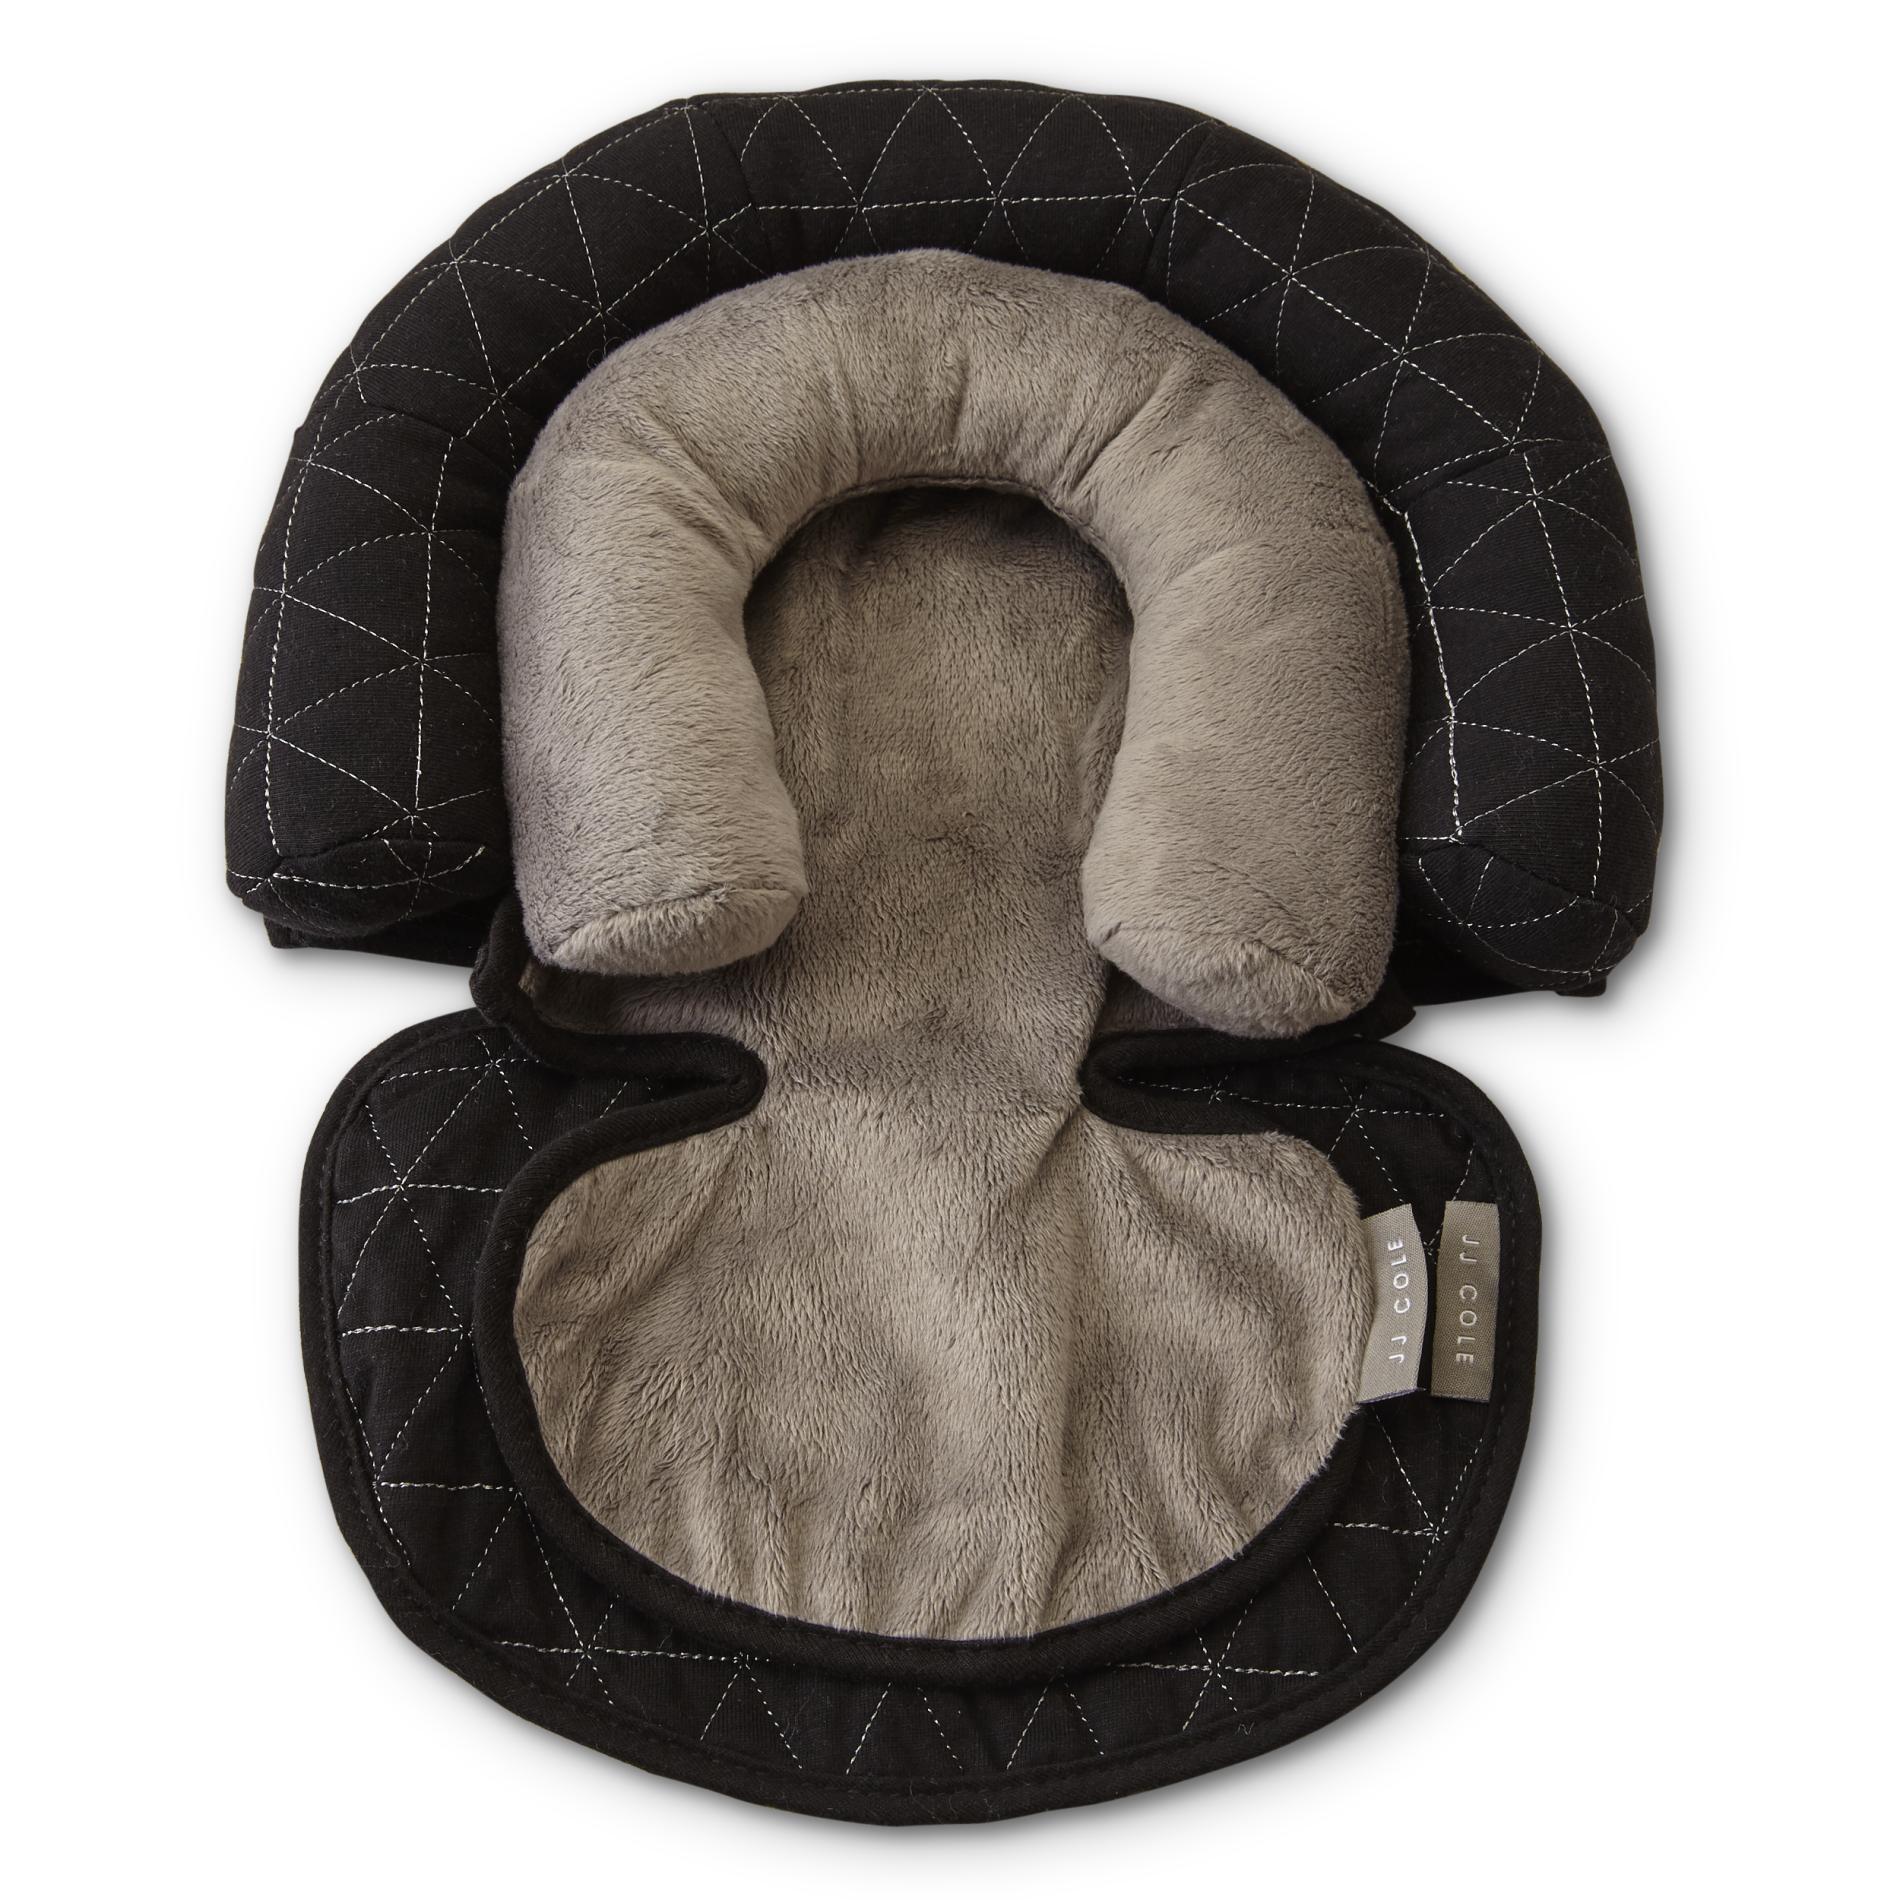 JJ Cole Infants' Head Support Pillow